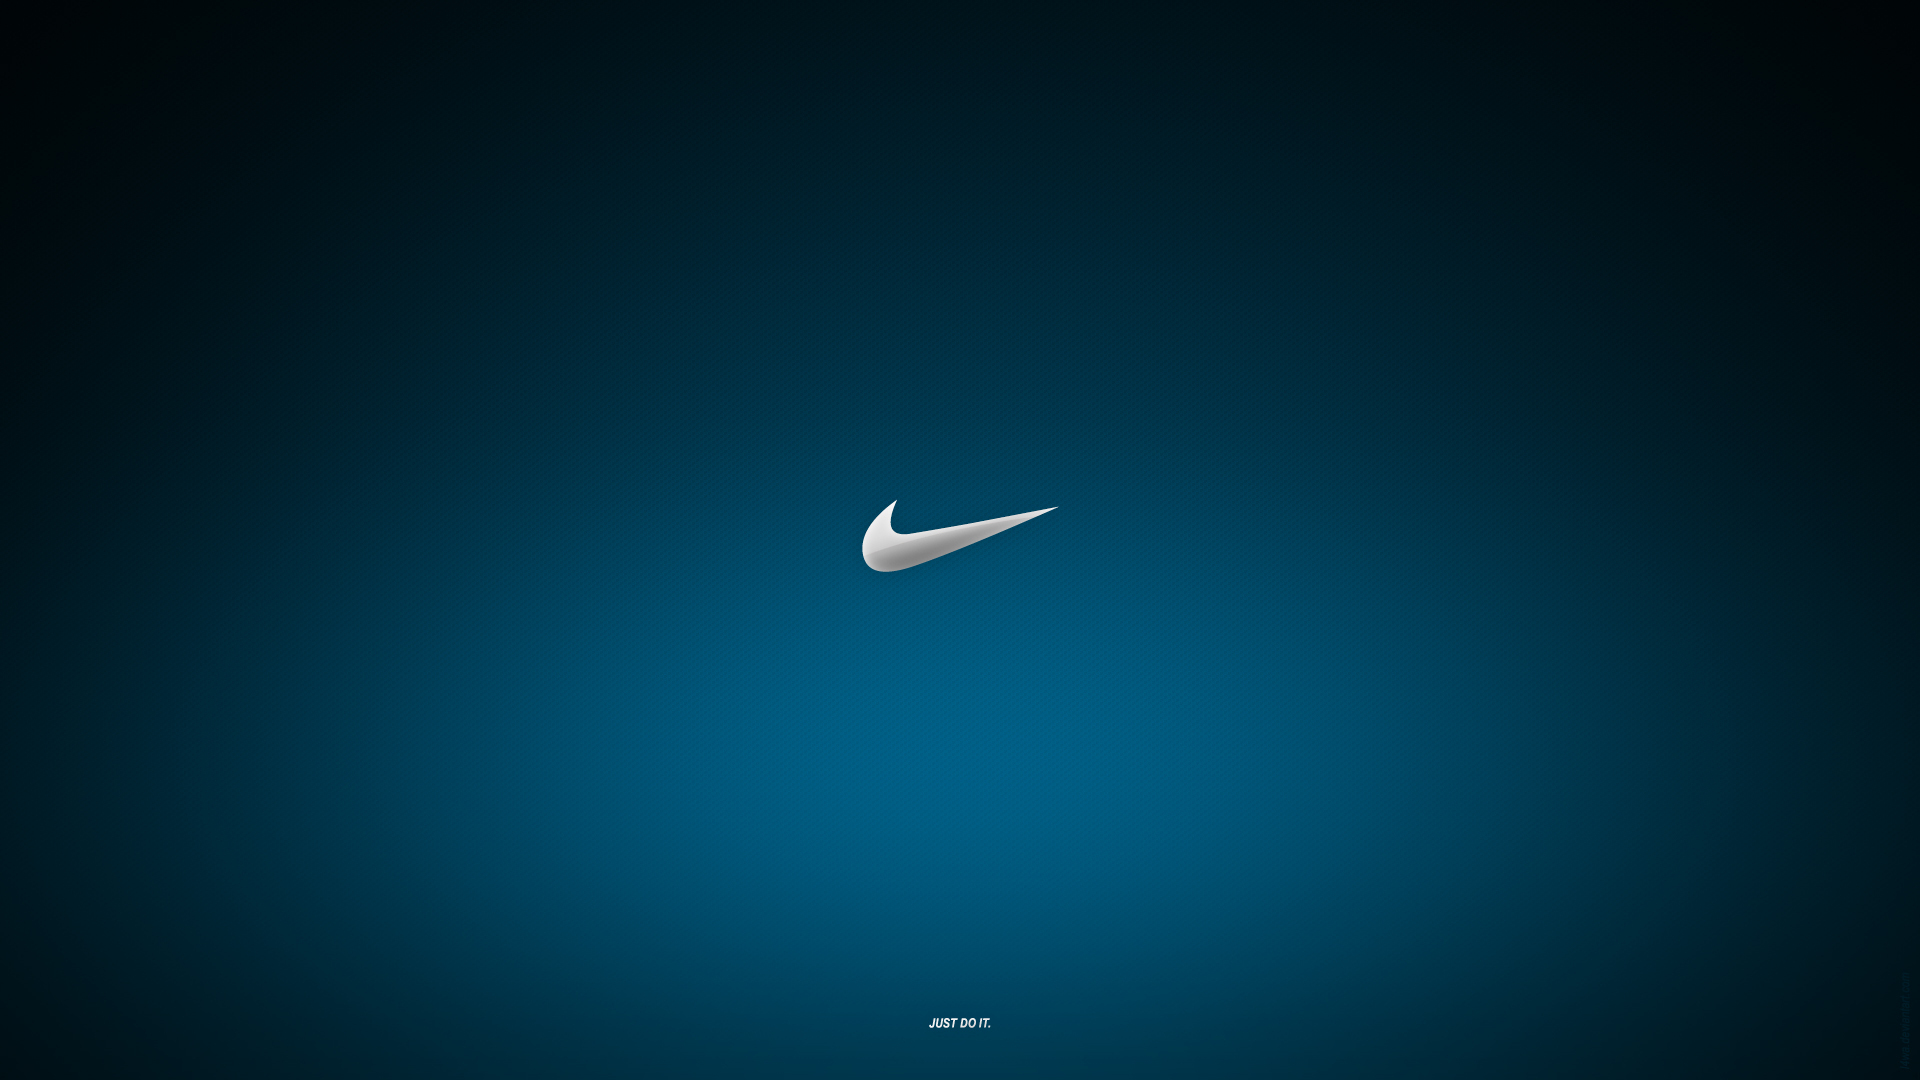 Descargar las imágenes Nike gratis para teléfonos Android y fondos pantalla de Nike para teléfonos móviles